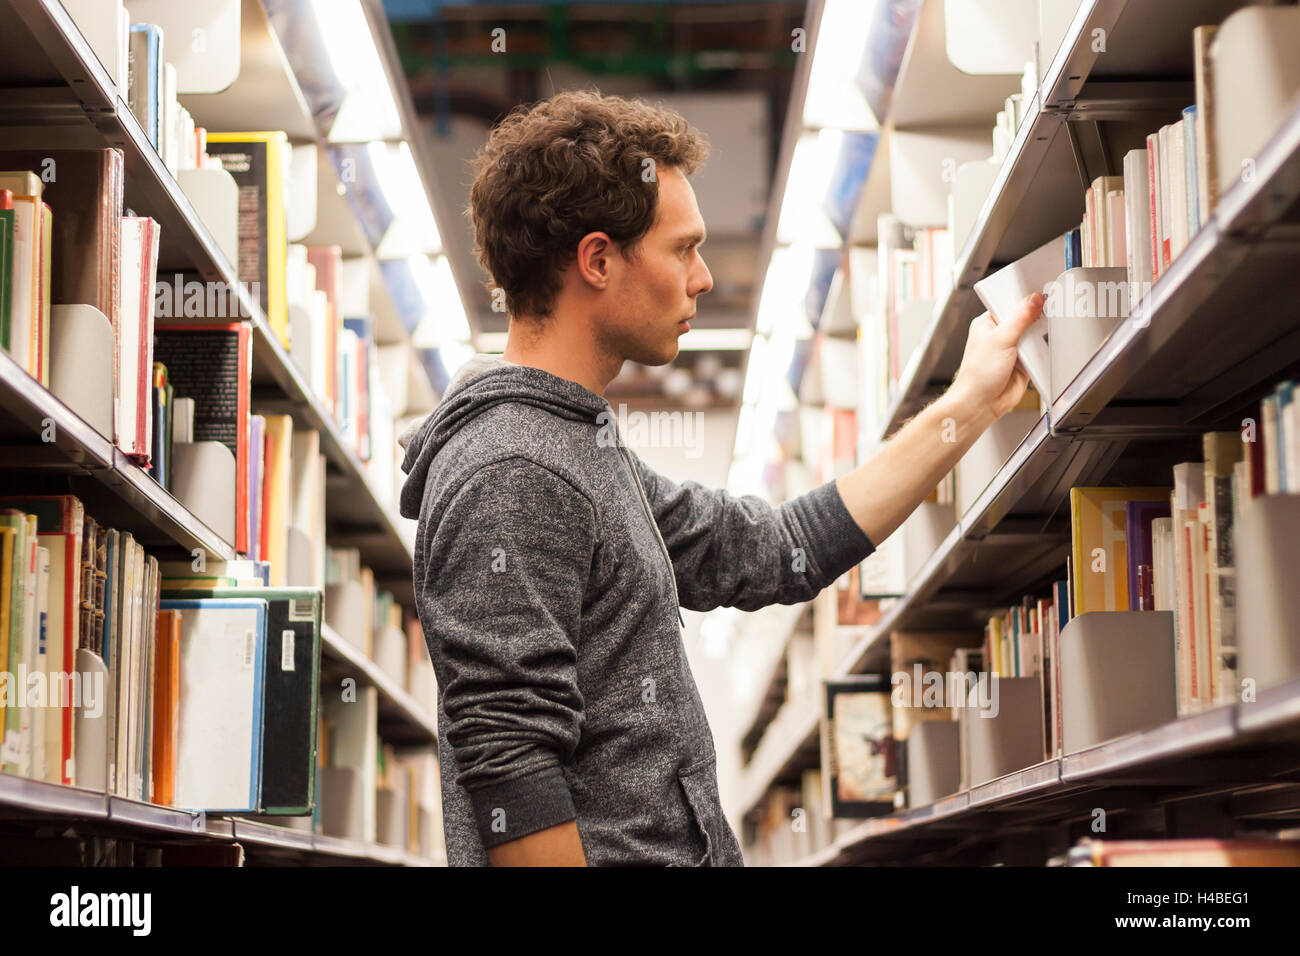 Junge männliche Schüler auswählen ein Buch aus einer Bibliothek Regal, Gymnasium Stockfoto